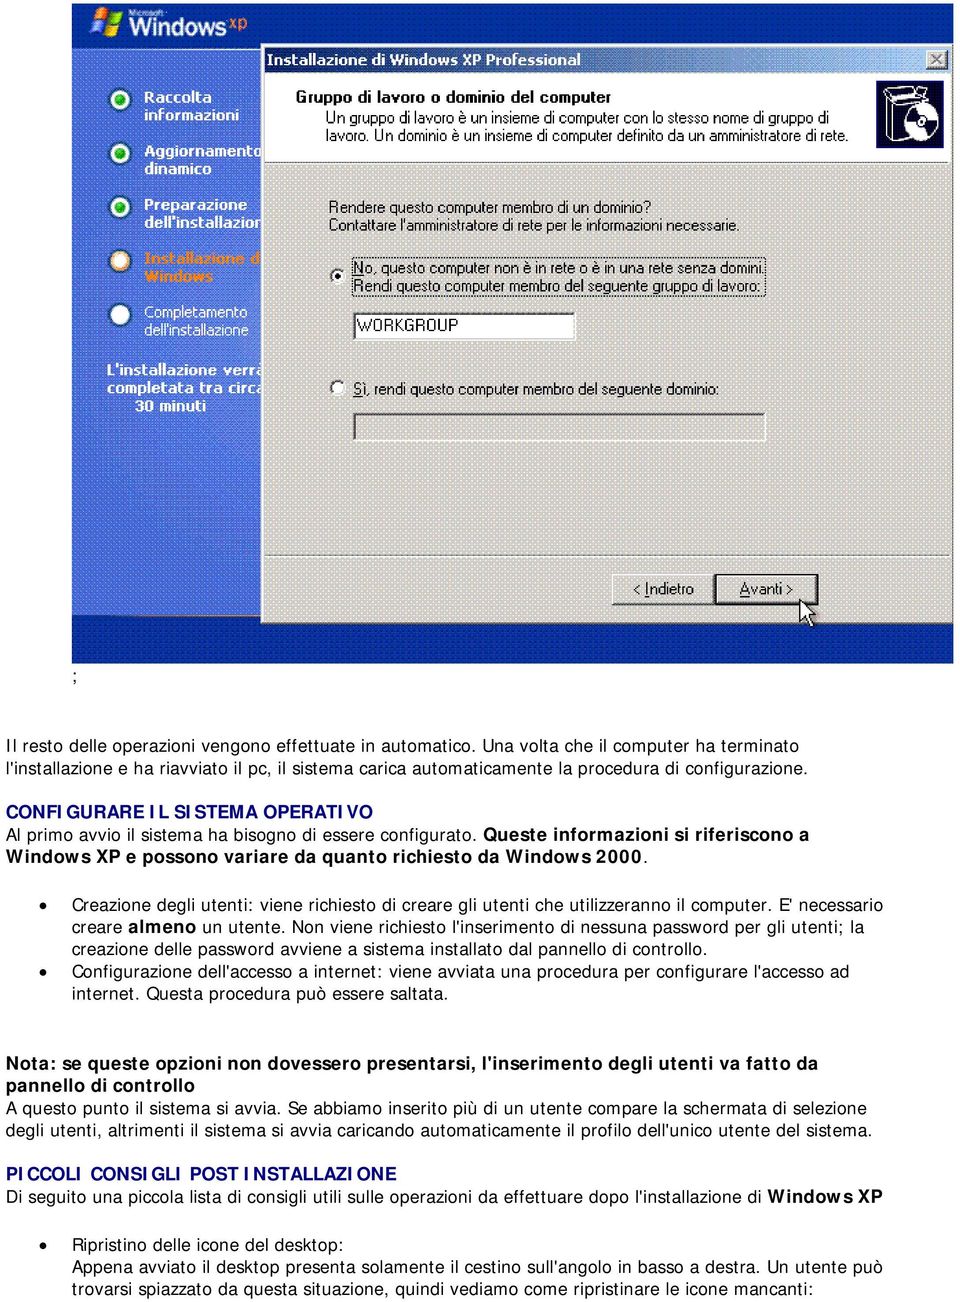 CONFIGURARE IL SISTEMA OPERATIVO Al primo avvio il sistema ha bisogno di essere configurato. Queste informazioni si riferiscono a Windows XP e possono variare da quanto richiesto da Windows 2000.